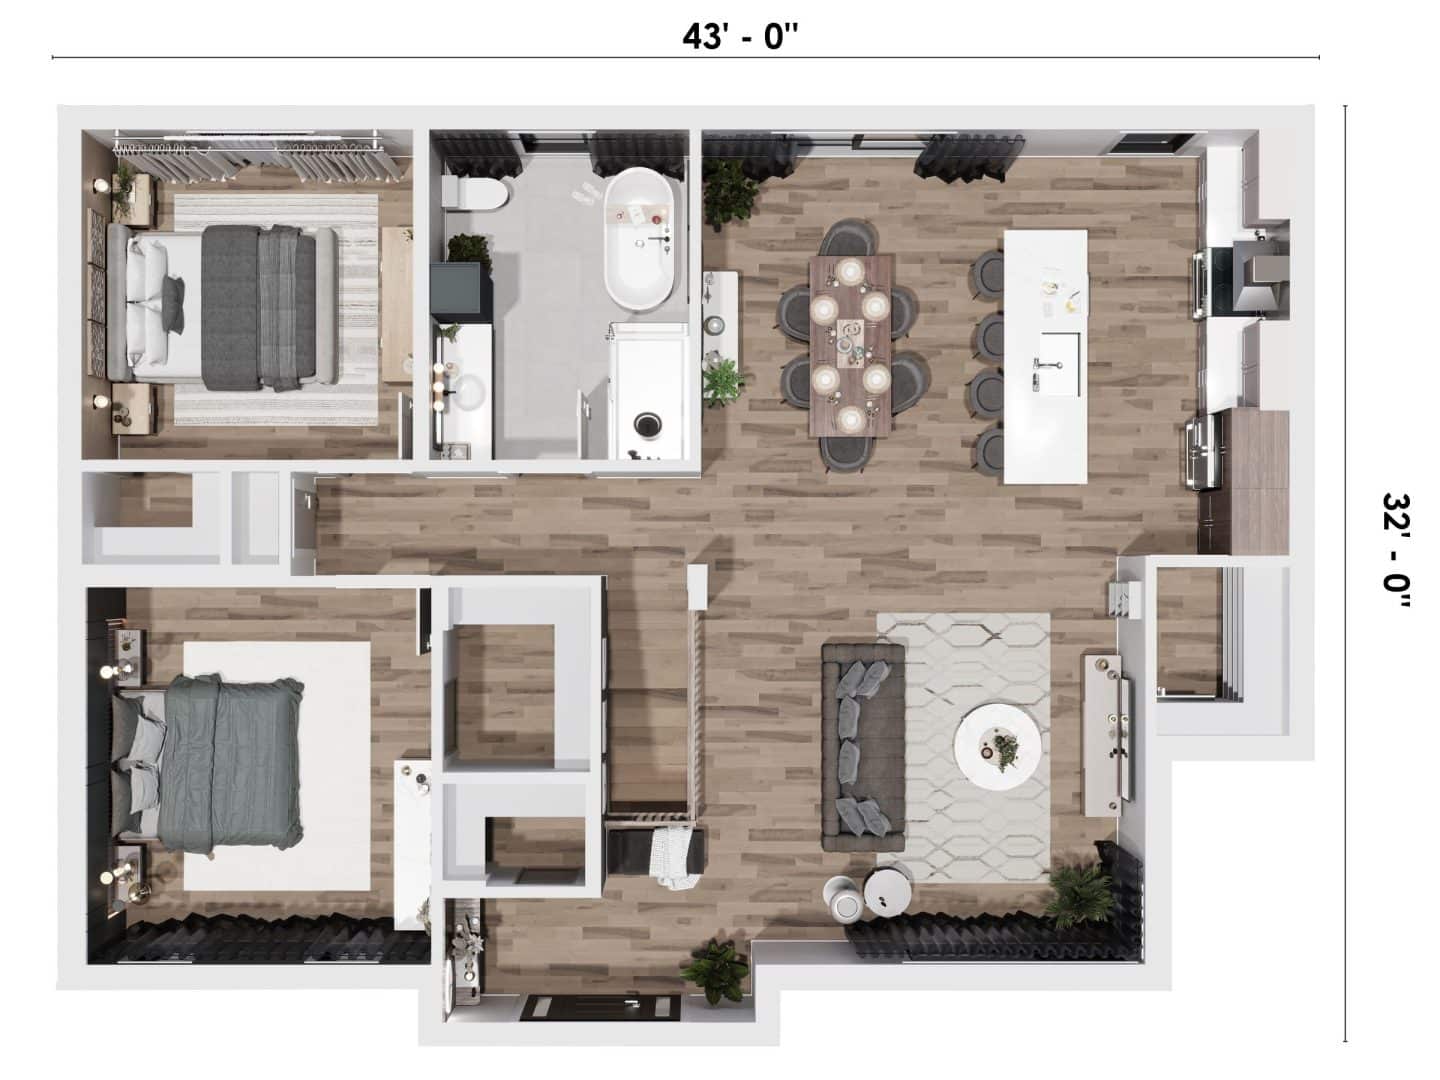 Le modèle Citana est une maison contemporaine de plain-pied. Vue en plan 3D